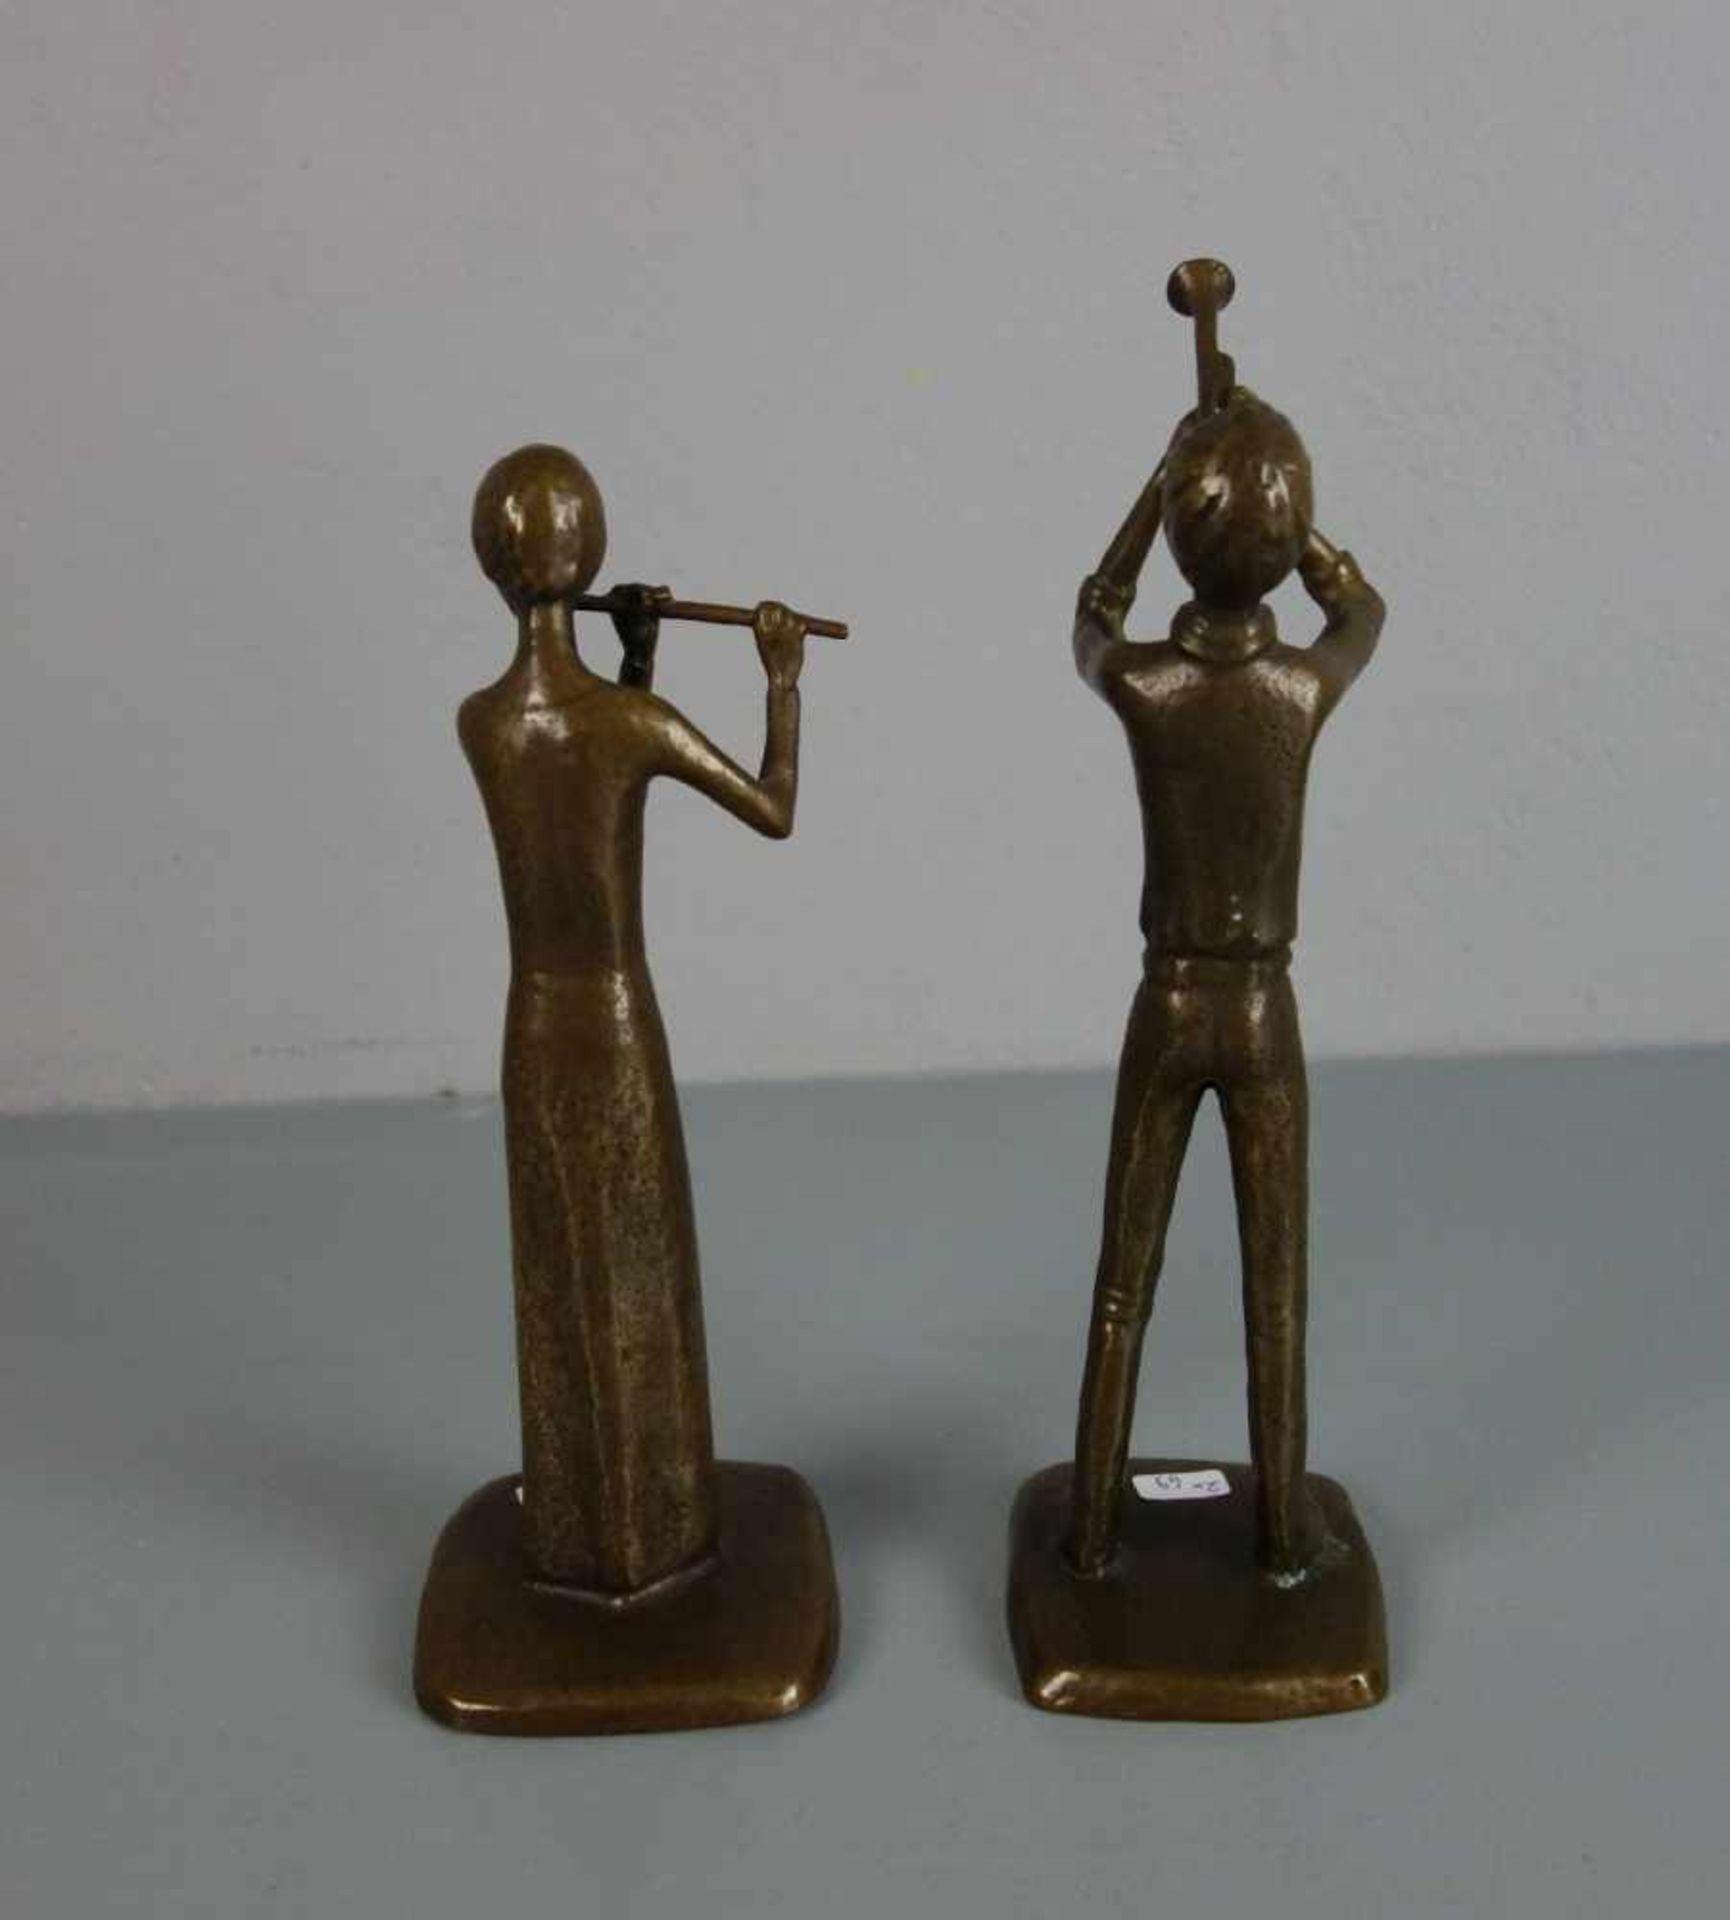 ANONYMER BILDHAUER (20. / 21. JH.), Paar Bronze - Skulpturen: "Trompeter" und "Flötistin" / two - Image 3 of 4